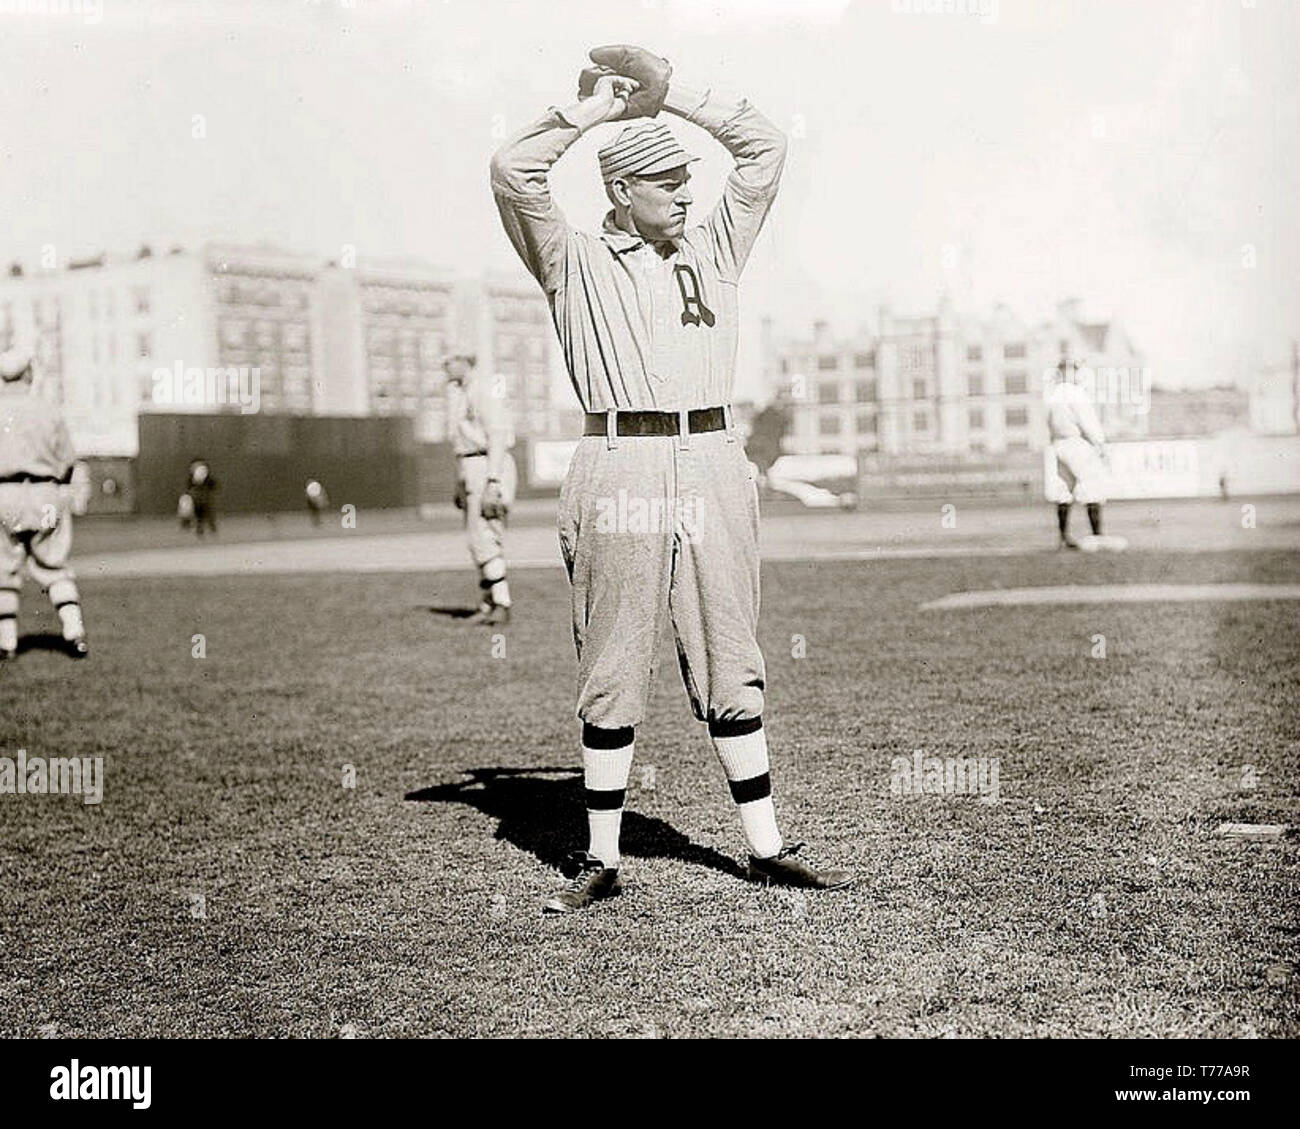 Cy Morgan, Filadelfia, atletismo, 1910. Foto de stock